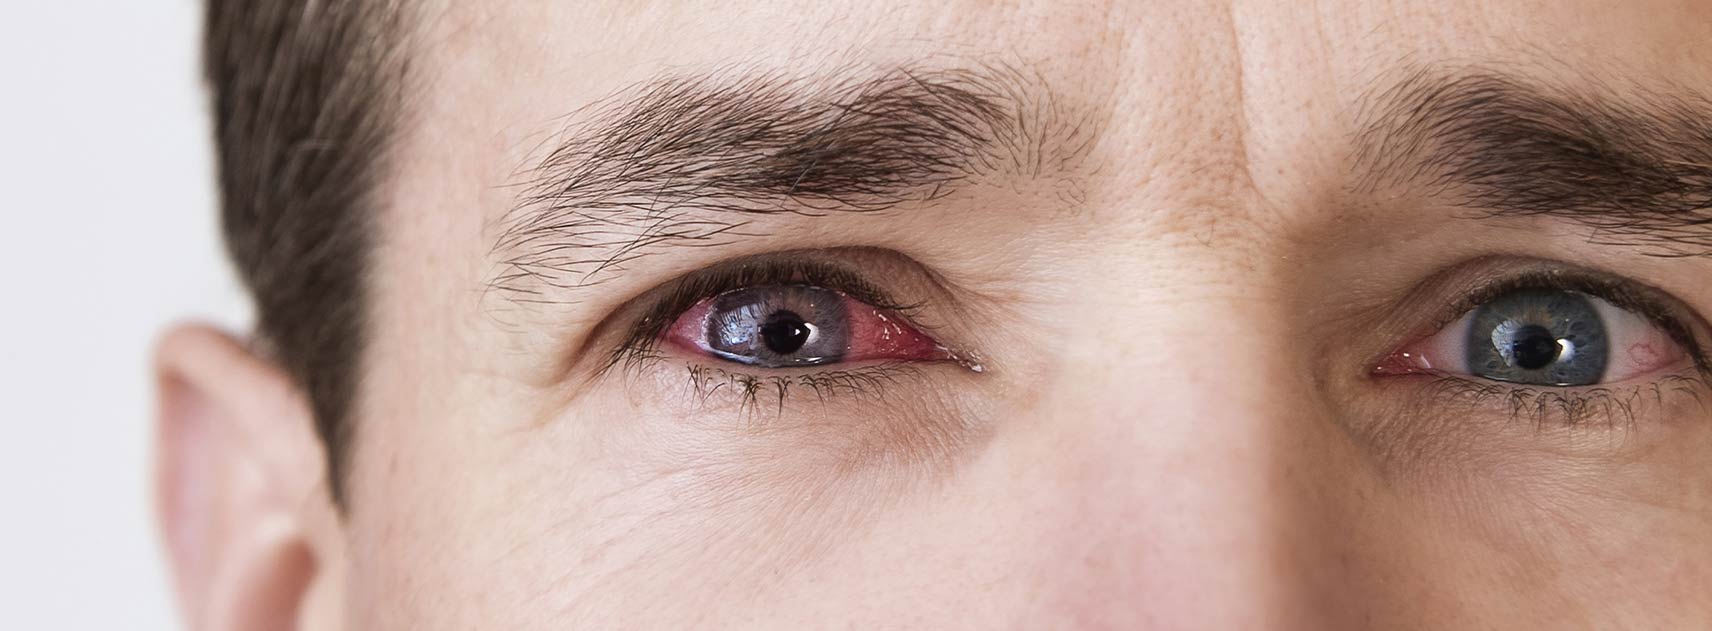 Inflamația marginii ochiului